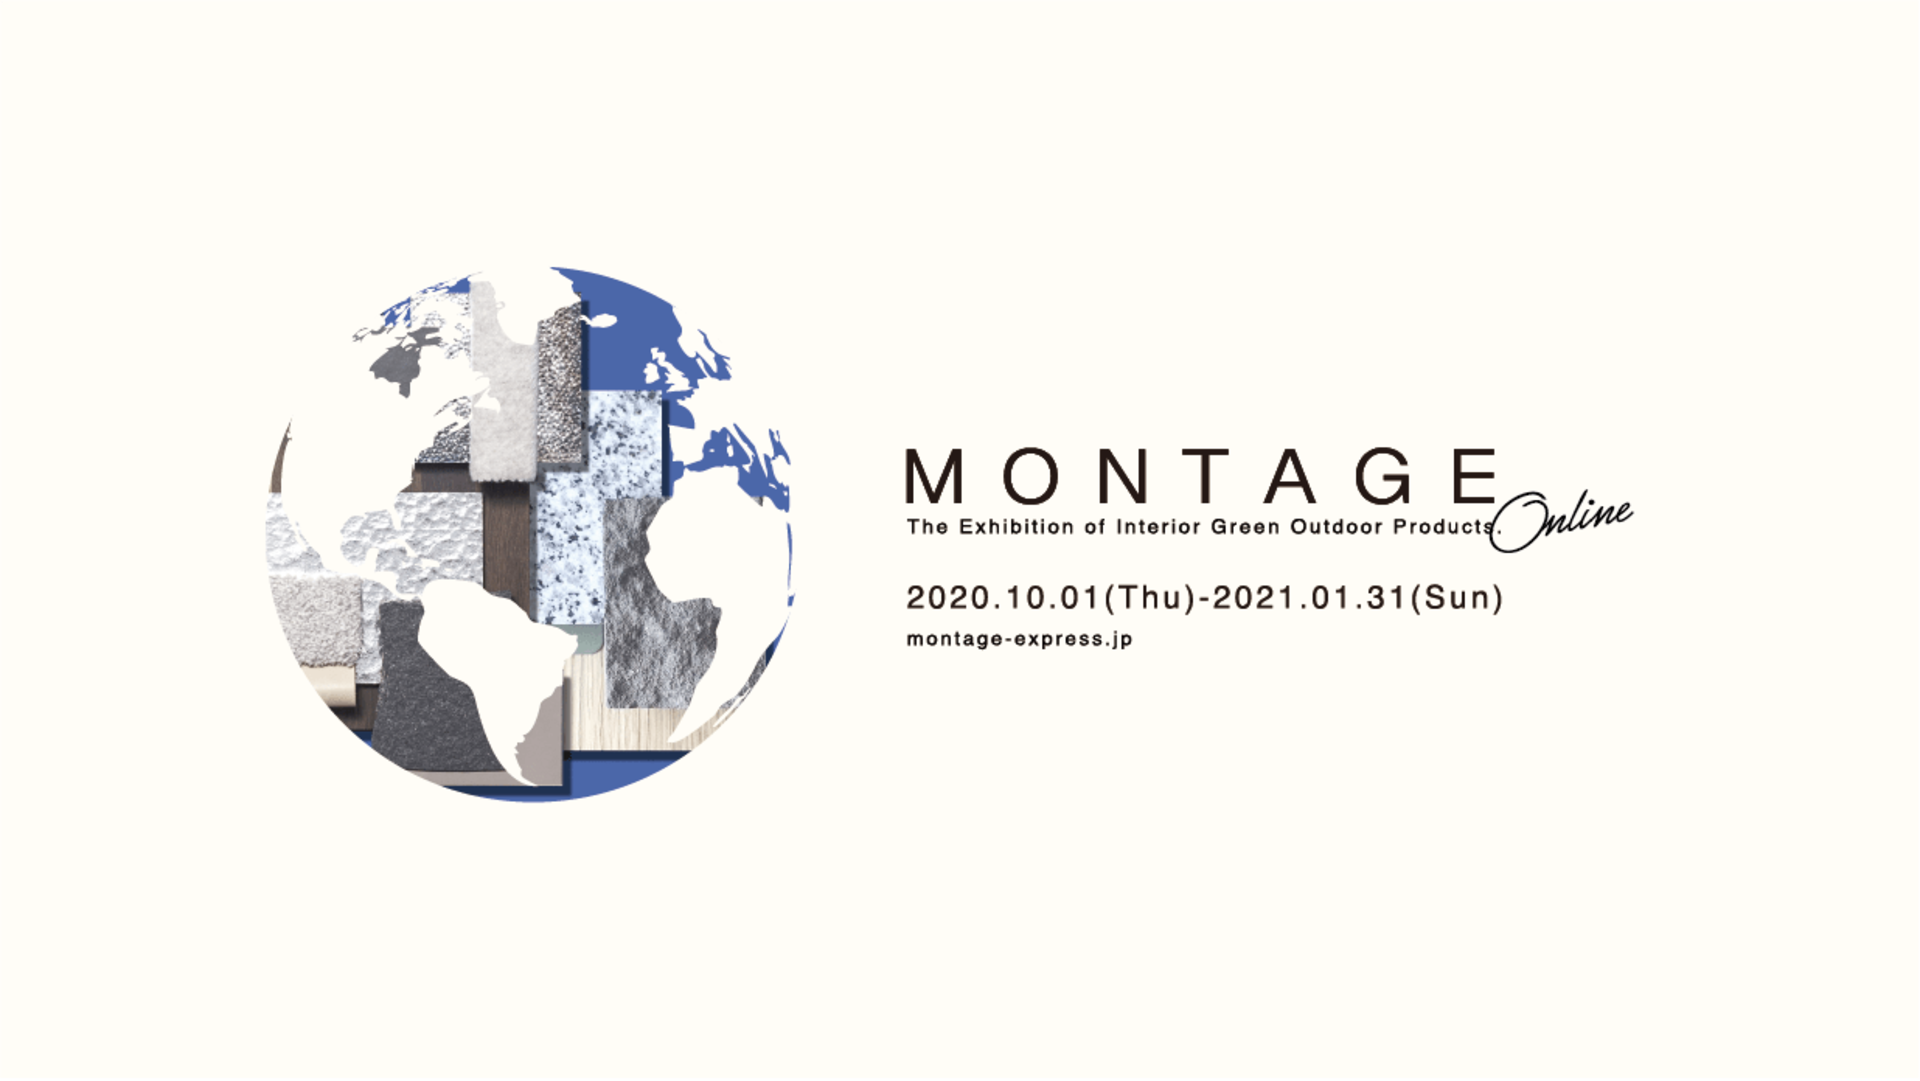 インテリア 雑貨などのオンライン展示会 Montage Online 10月1日より開催 株式会社イーストフィールズのプレスリリース